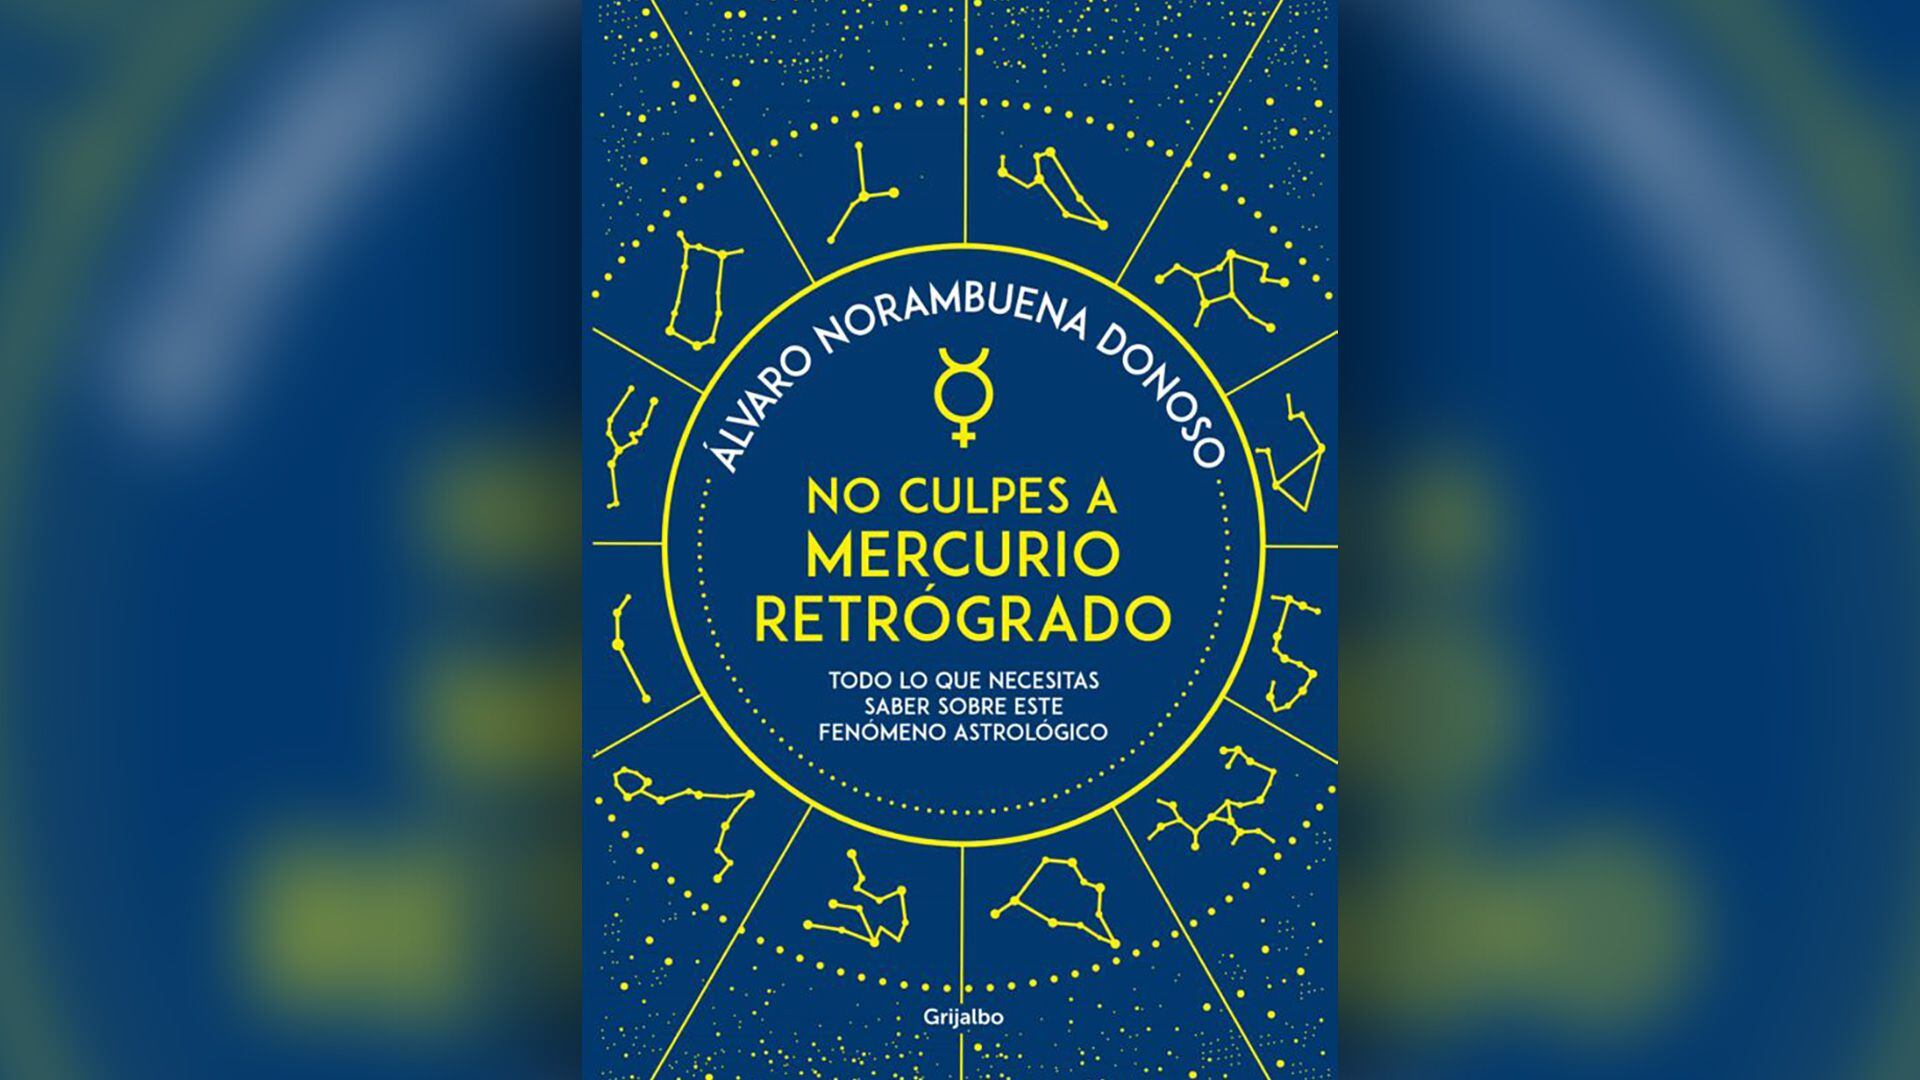 Portada del libro “No culpes a Mercurio retrógrado”, Álvaro Norambuena